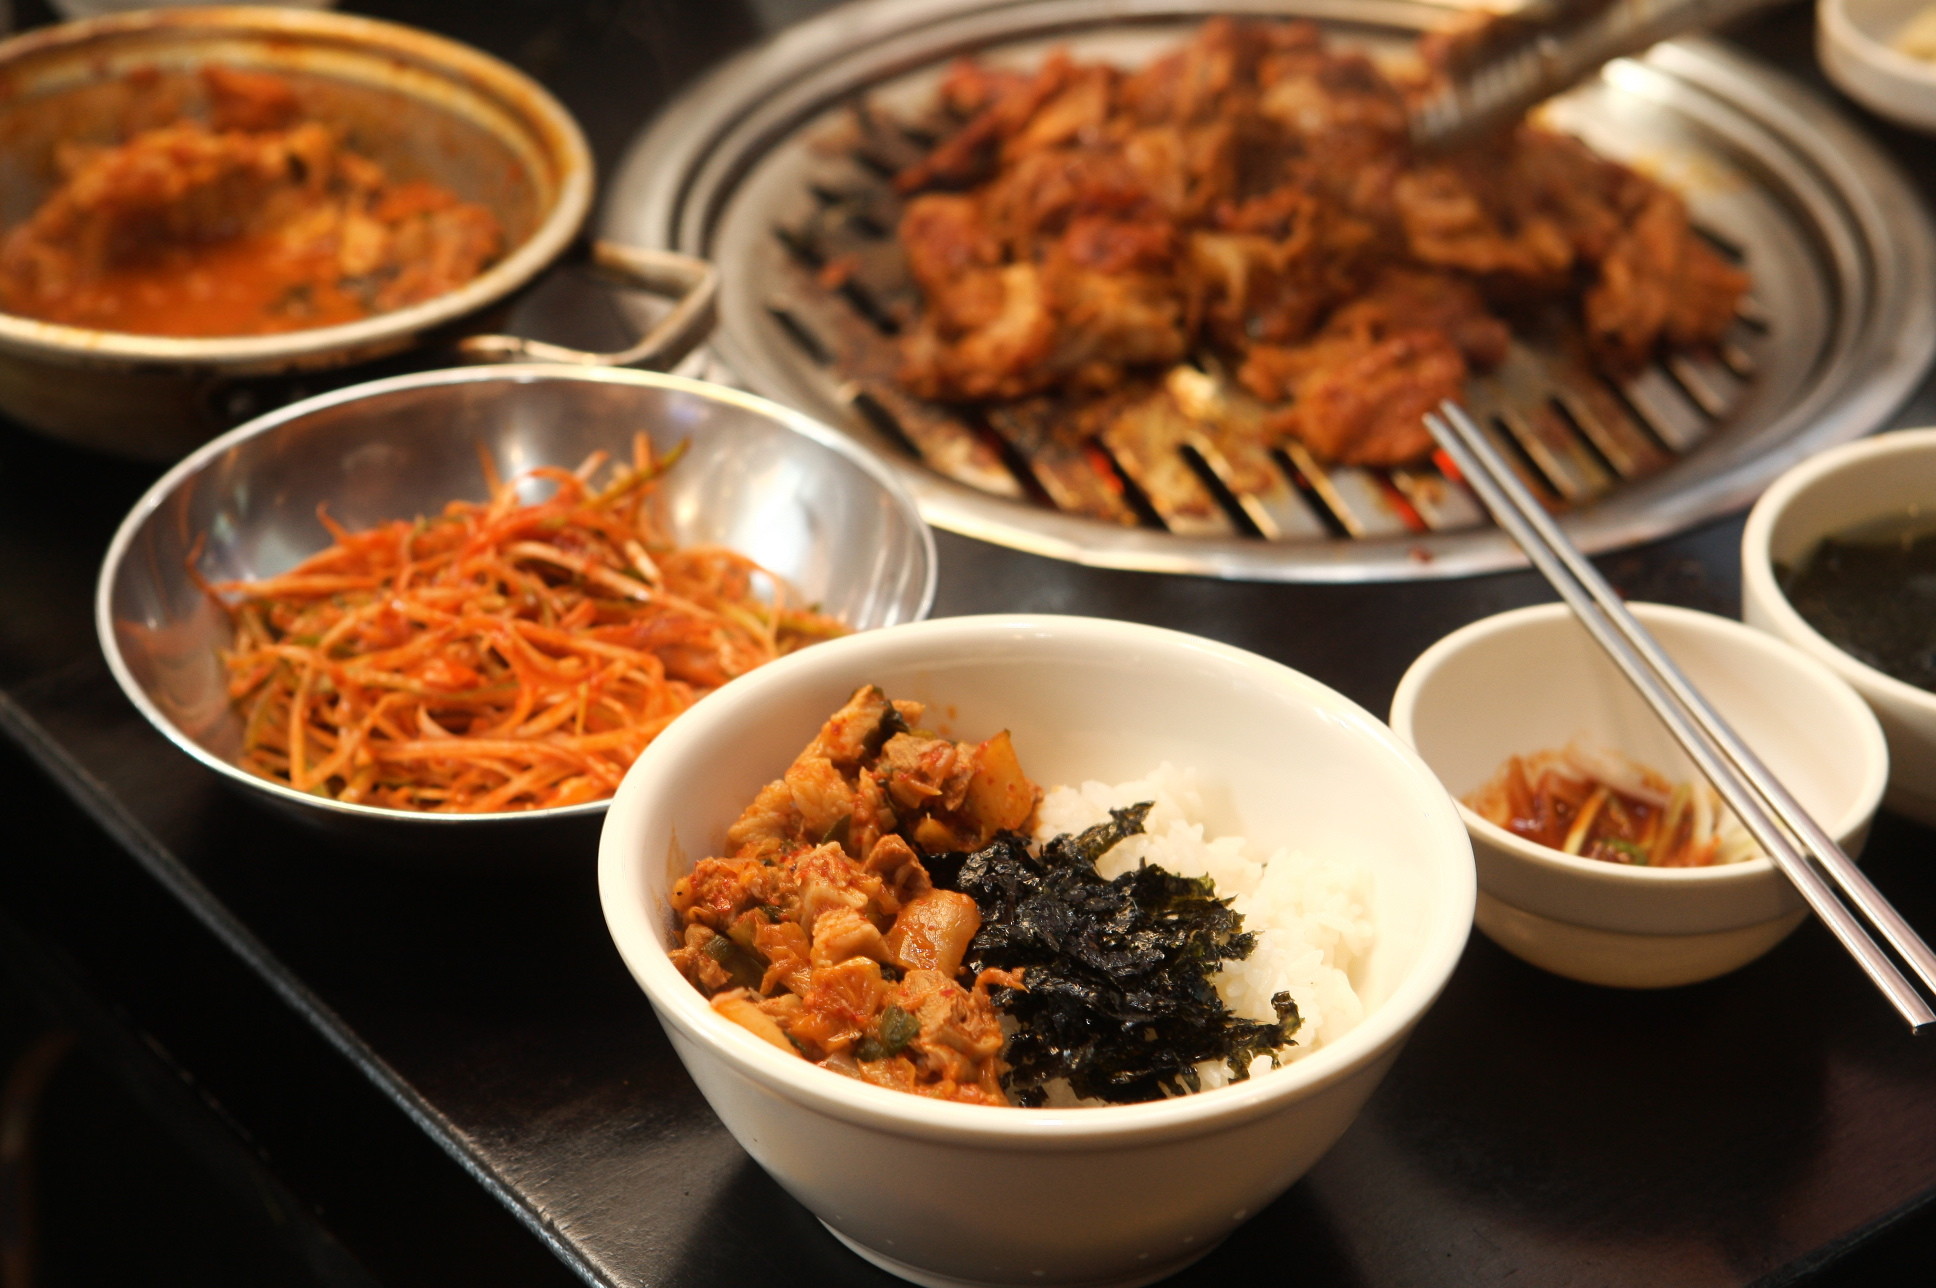 「中国人嗓门大」被餐厅关紧闭 女大生:韩国人